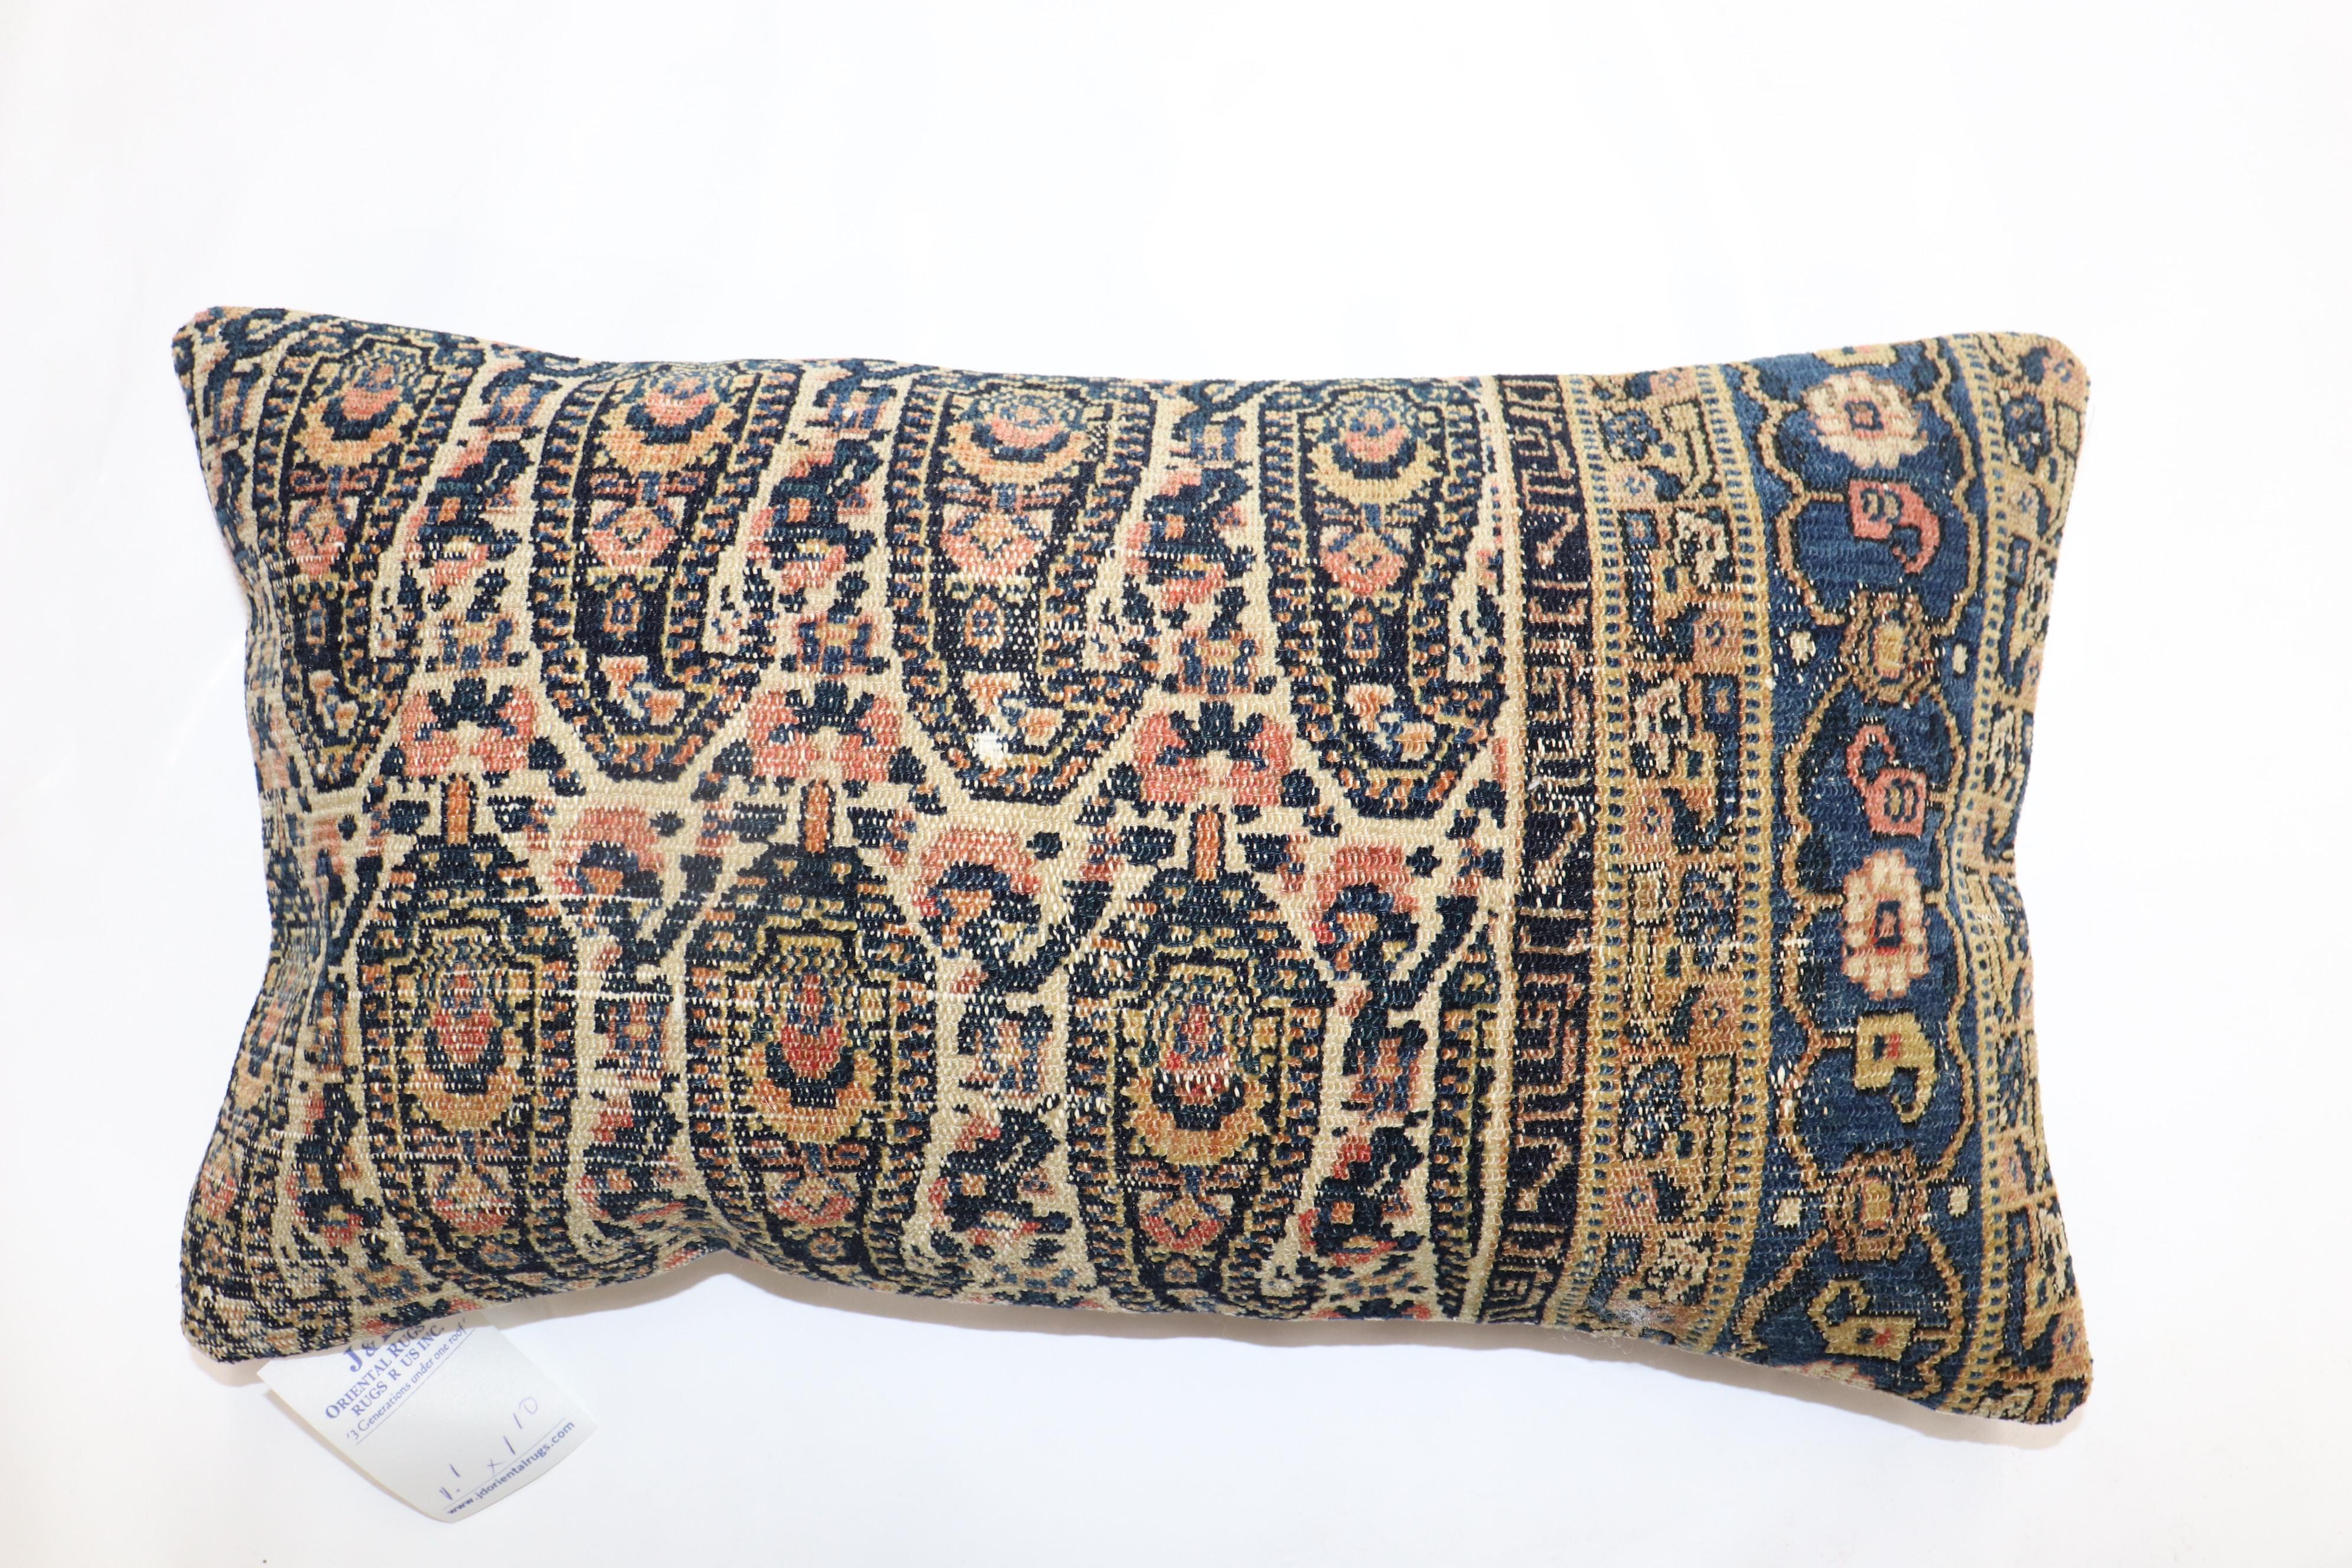 Kissen aus einem fein gewebten persischen Senneh-Teppich.

Maße: 13'' x 22''.